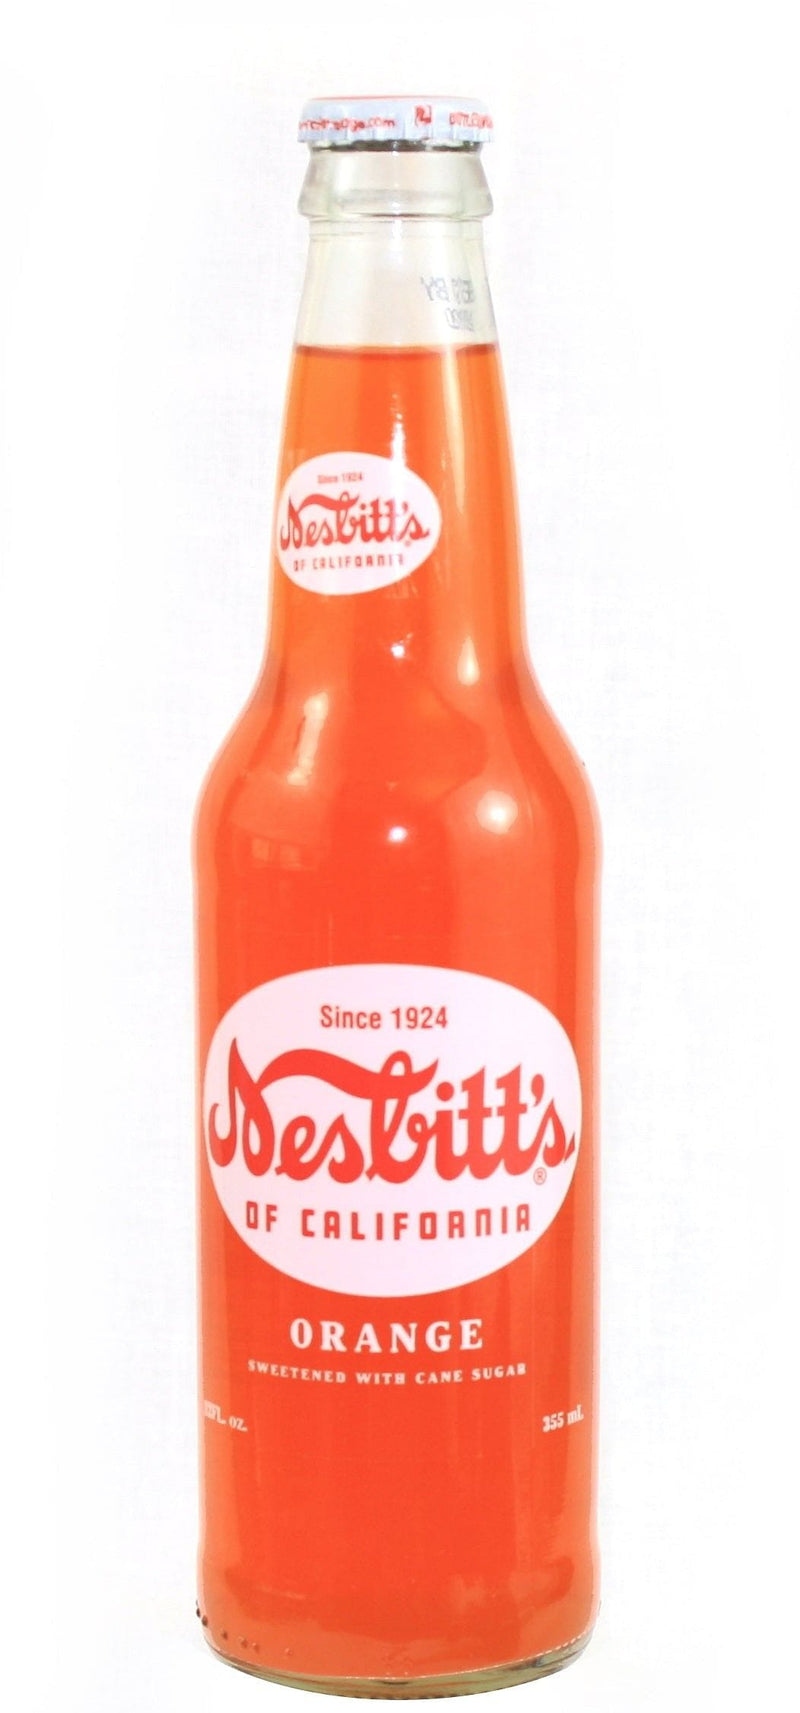 Nesbitts Glass Soda Bottle - Orange - Shelburne Country Store